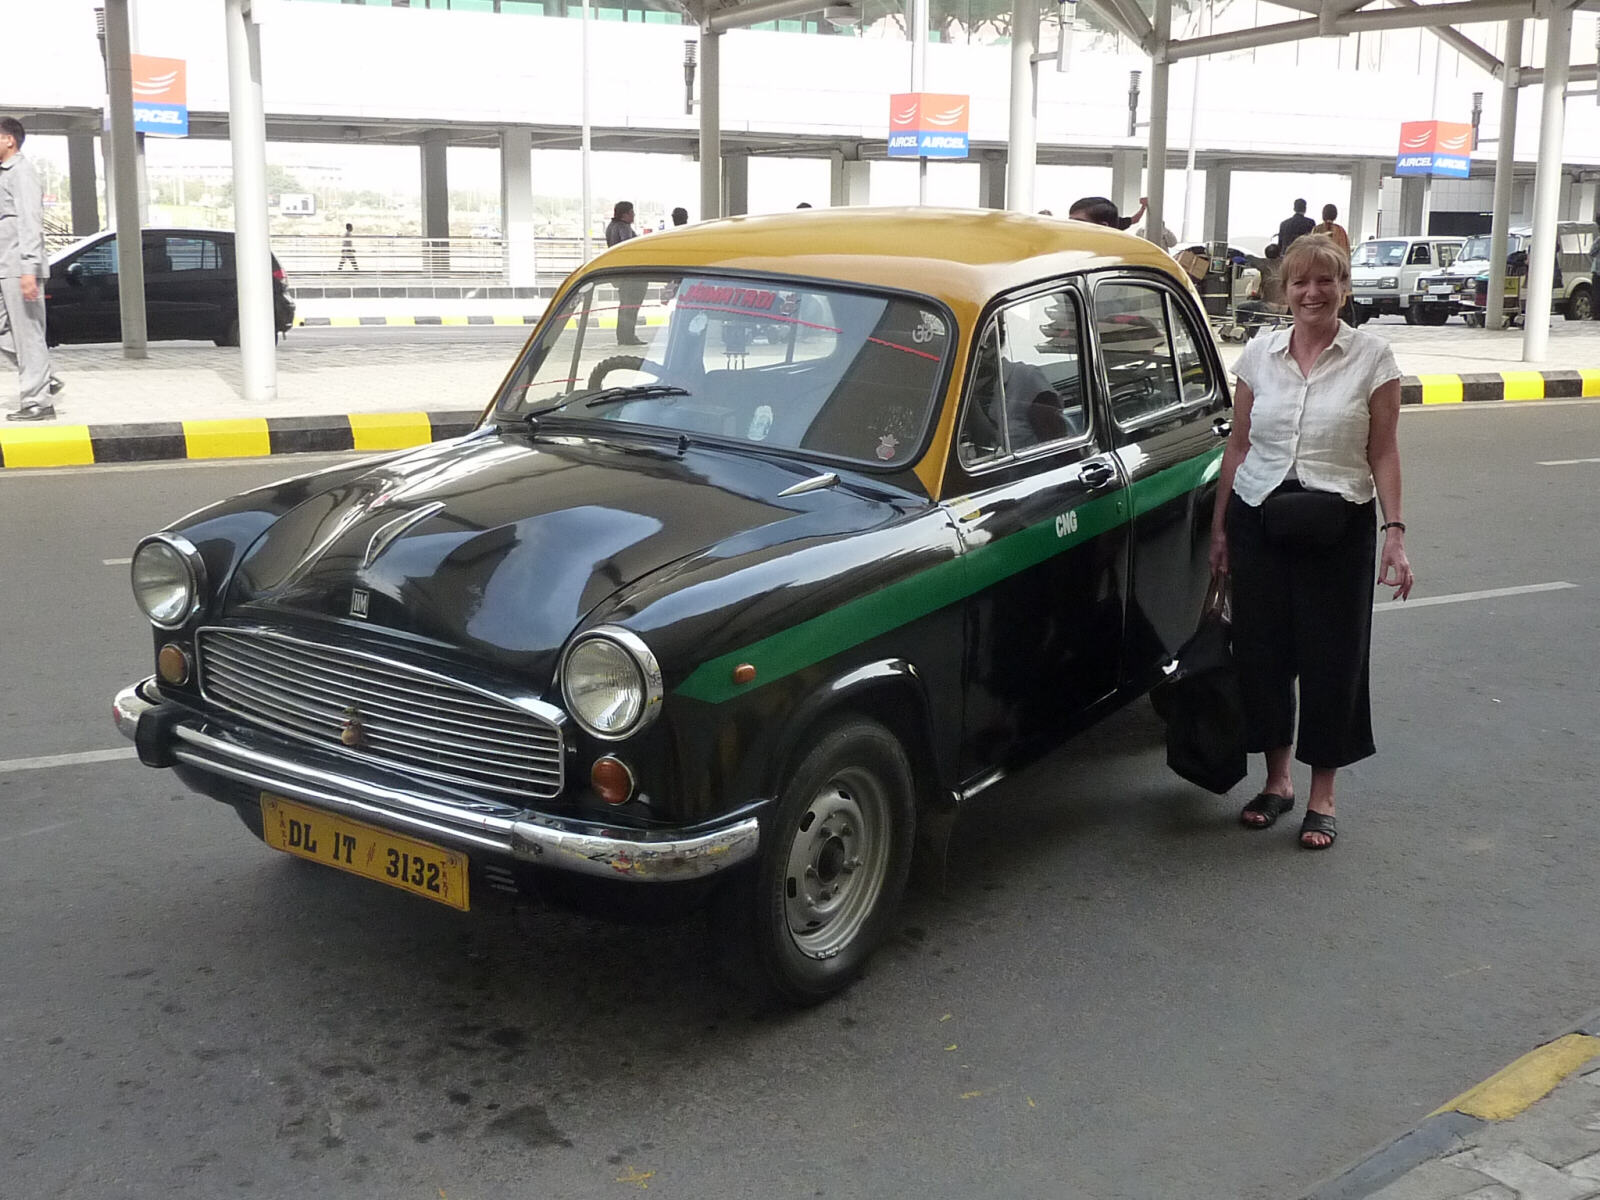 A classic Ambassador taxi at Delhi airport, India